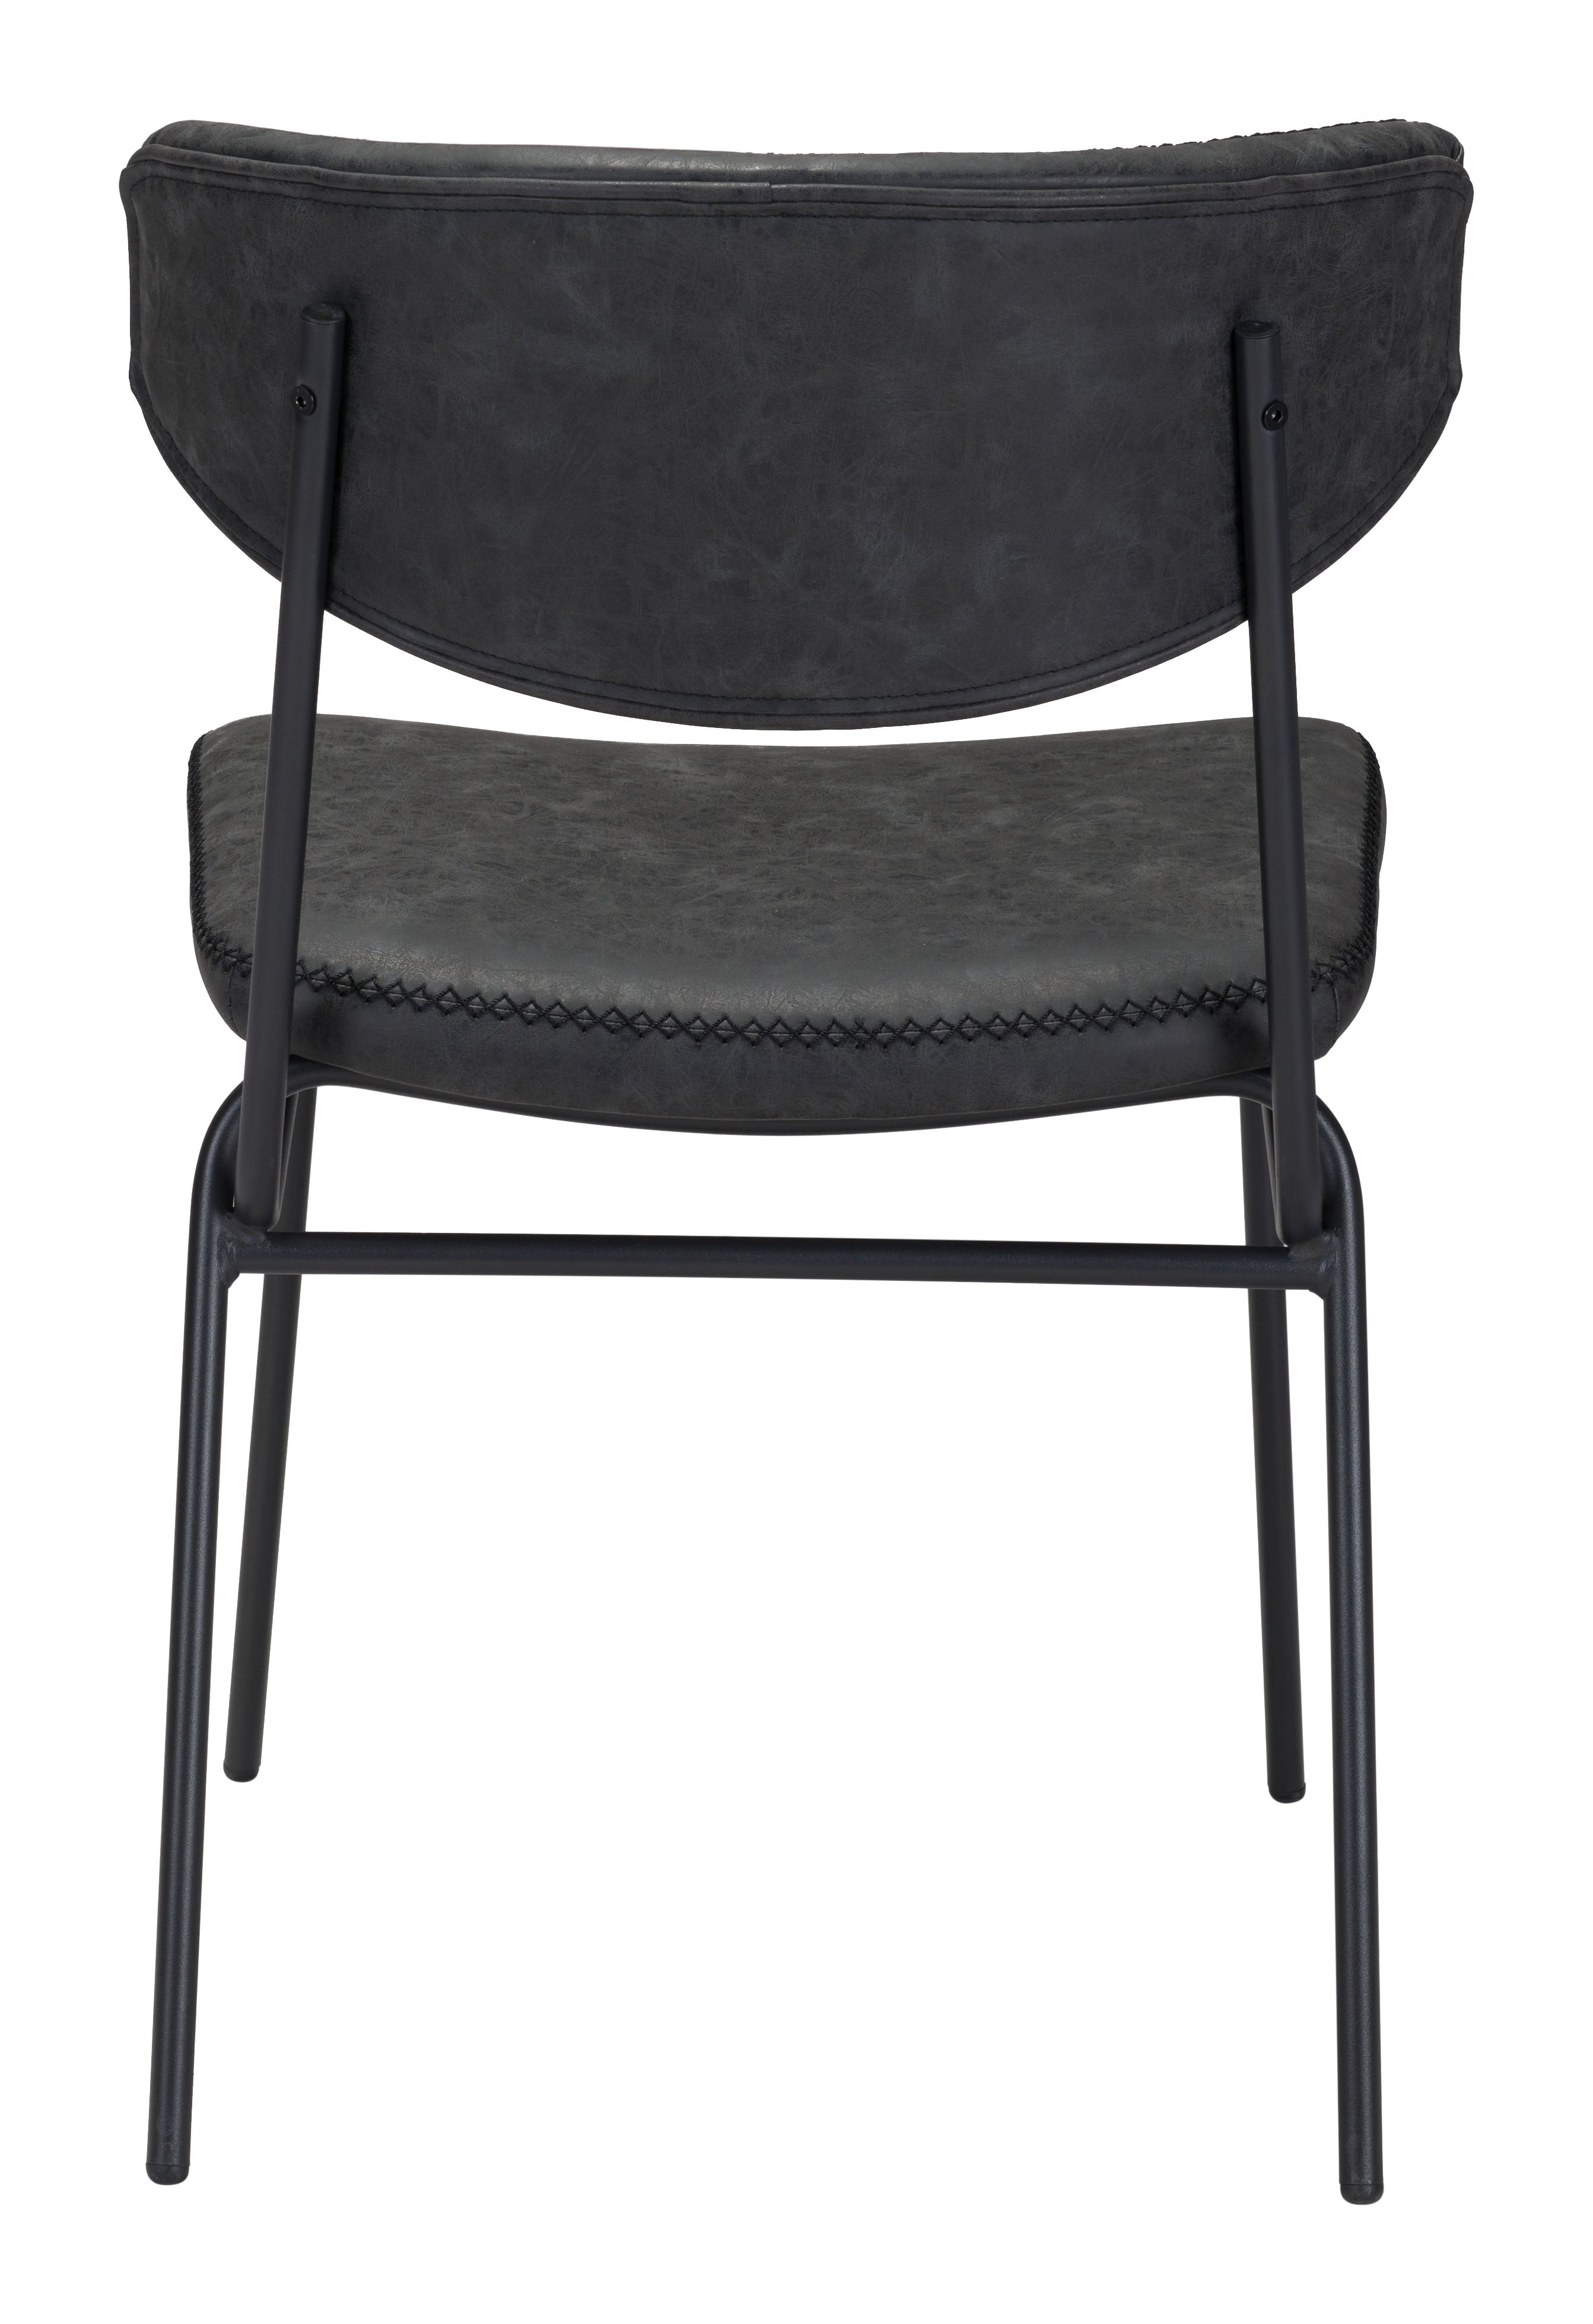 Ellen Dining Chair (Set of 2) Vintage Black